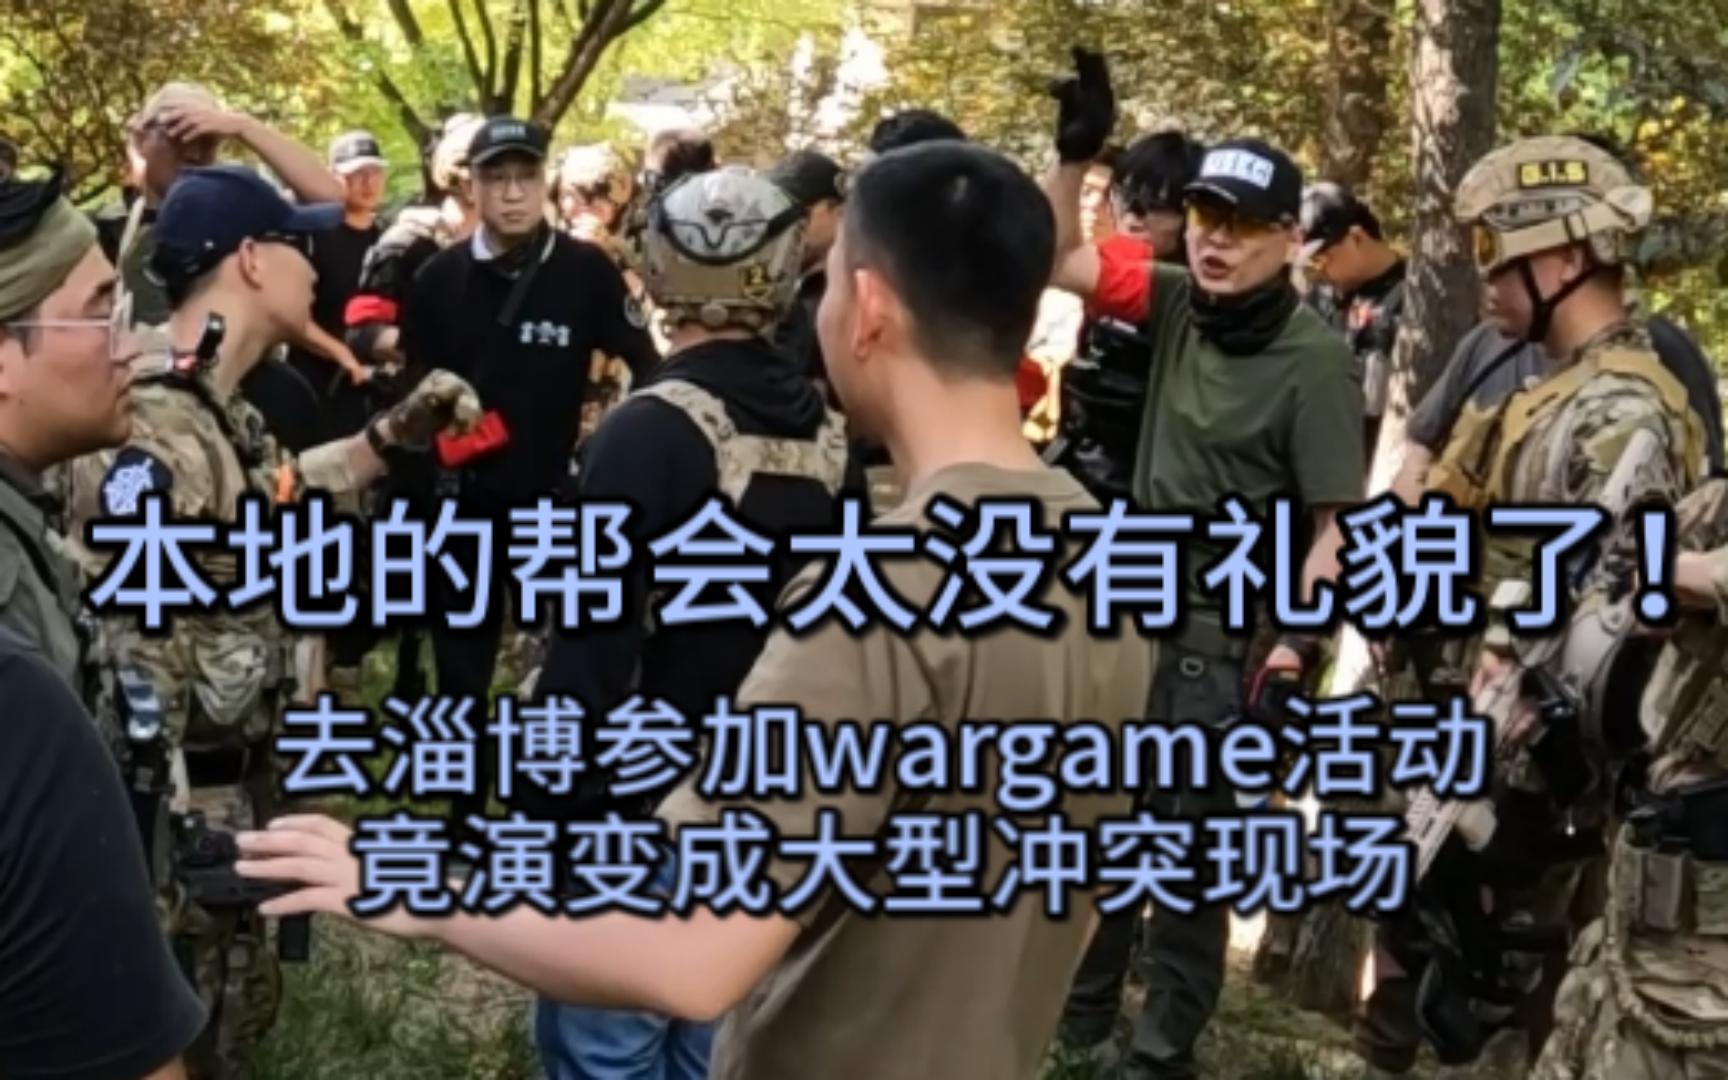 去淄博参加wargame活动竟演变成大型冲突现场